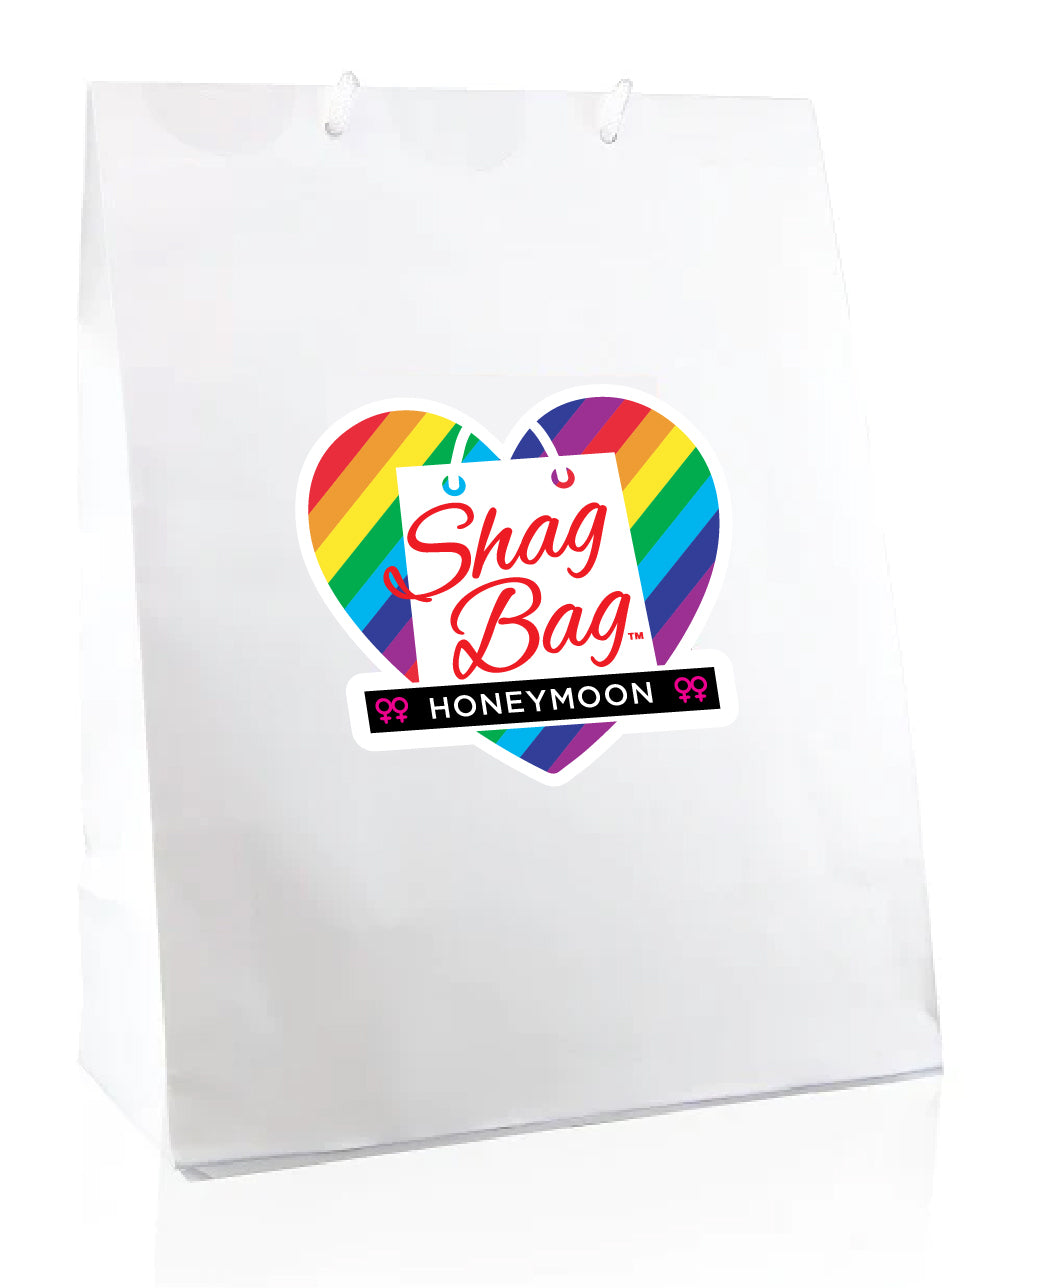 Honeymoon Shag Bag - For Her Lesbian